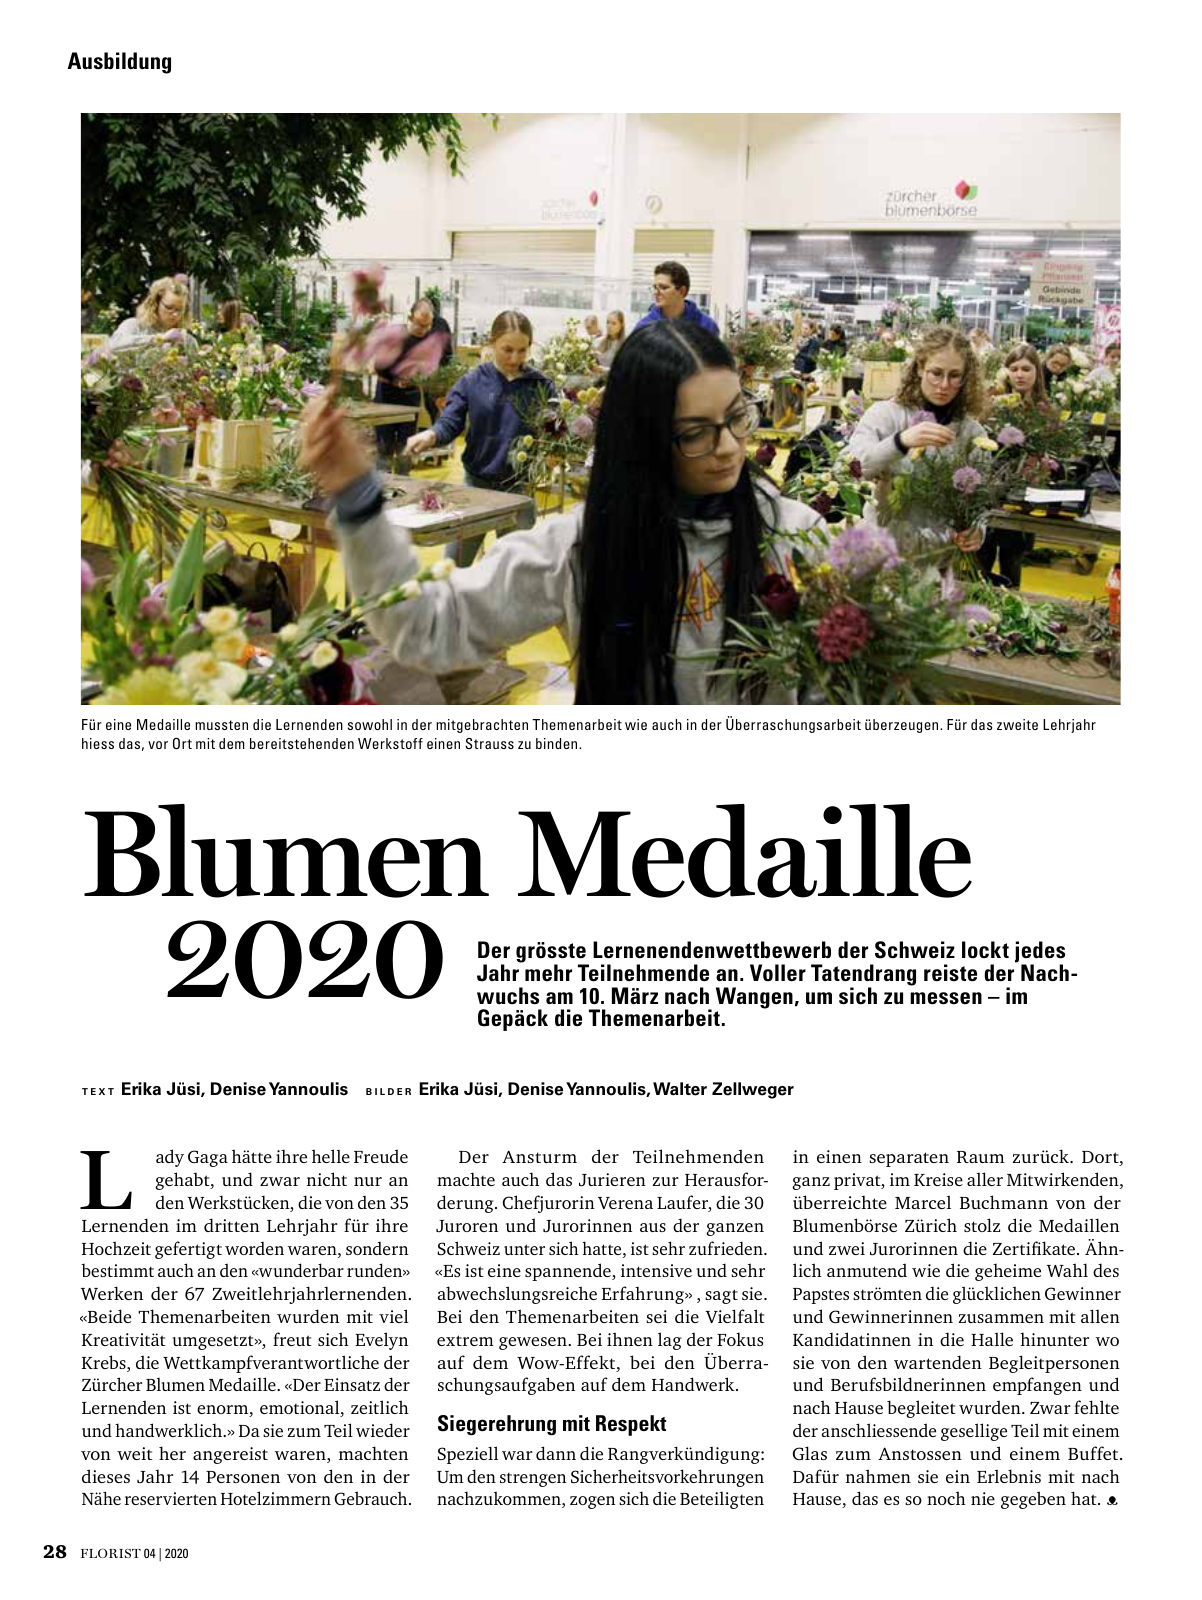 Vorschau Florist - Ausgabe April 2020 Seite 26